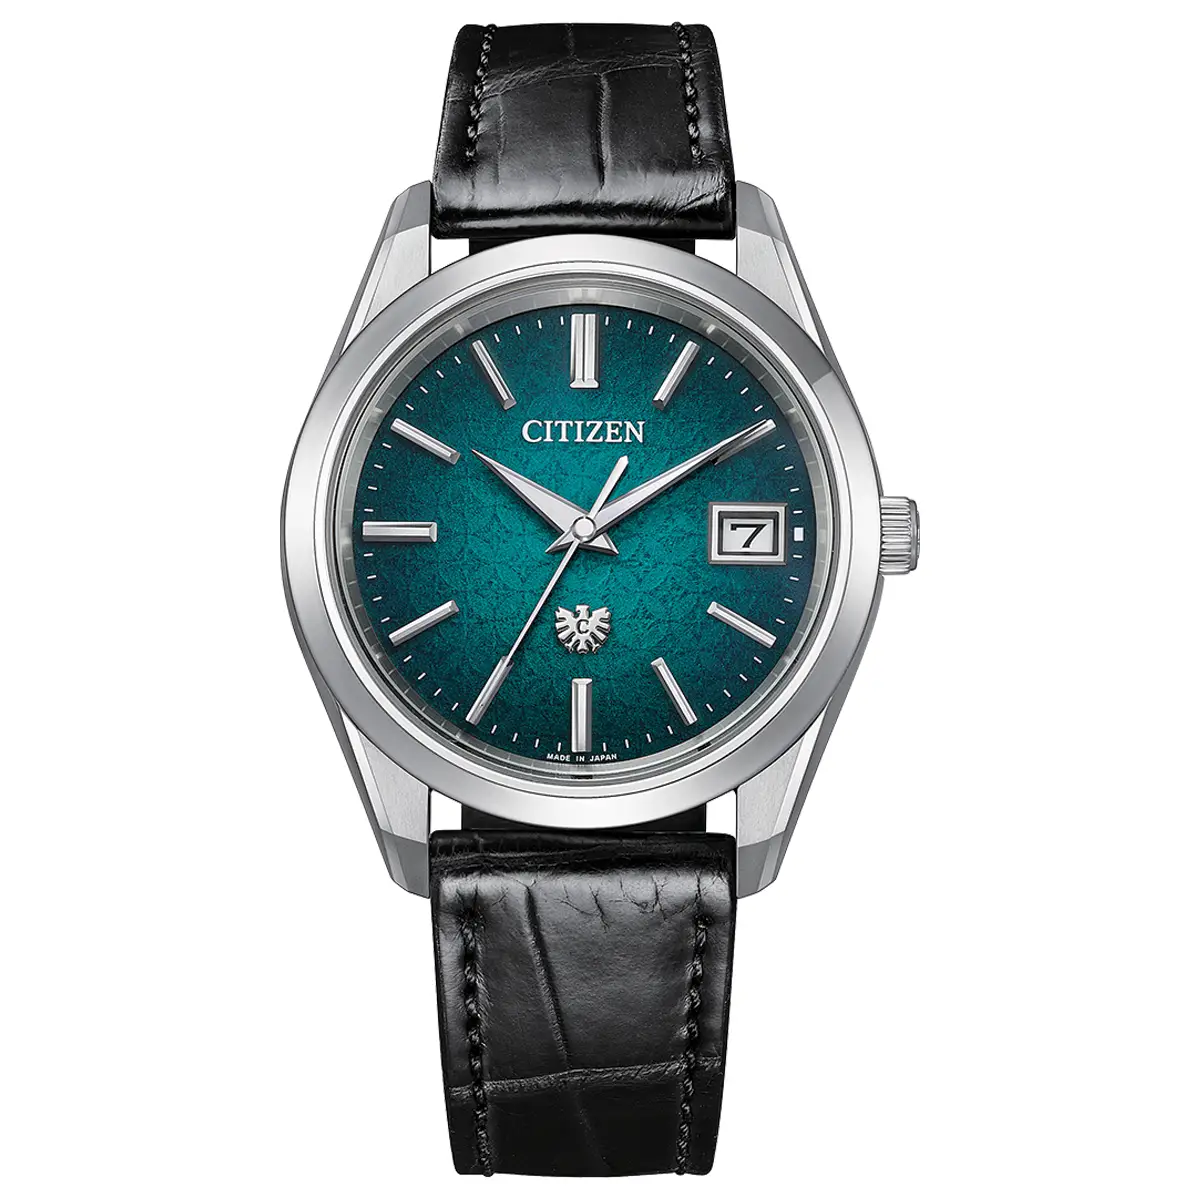 Đồng hồ The Citizen Shippo Tsunagi Pattern Limited Edition AQ4100-22W với mặt số màu xanh. Dây đeo bằng da. Thân vỏ bằng titanium.